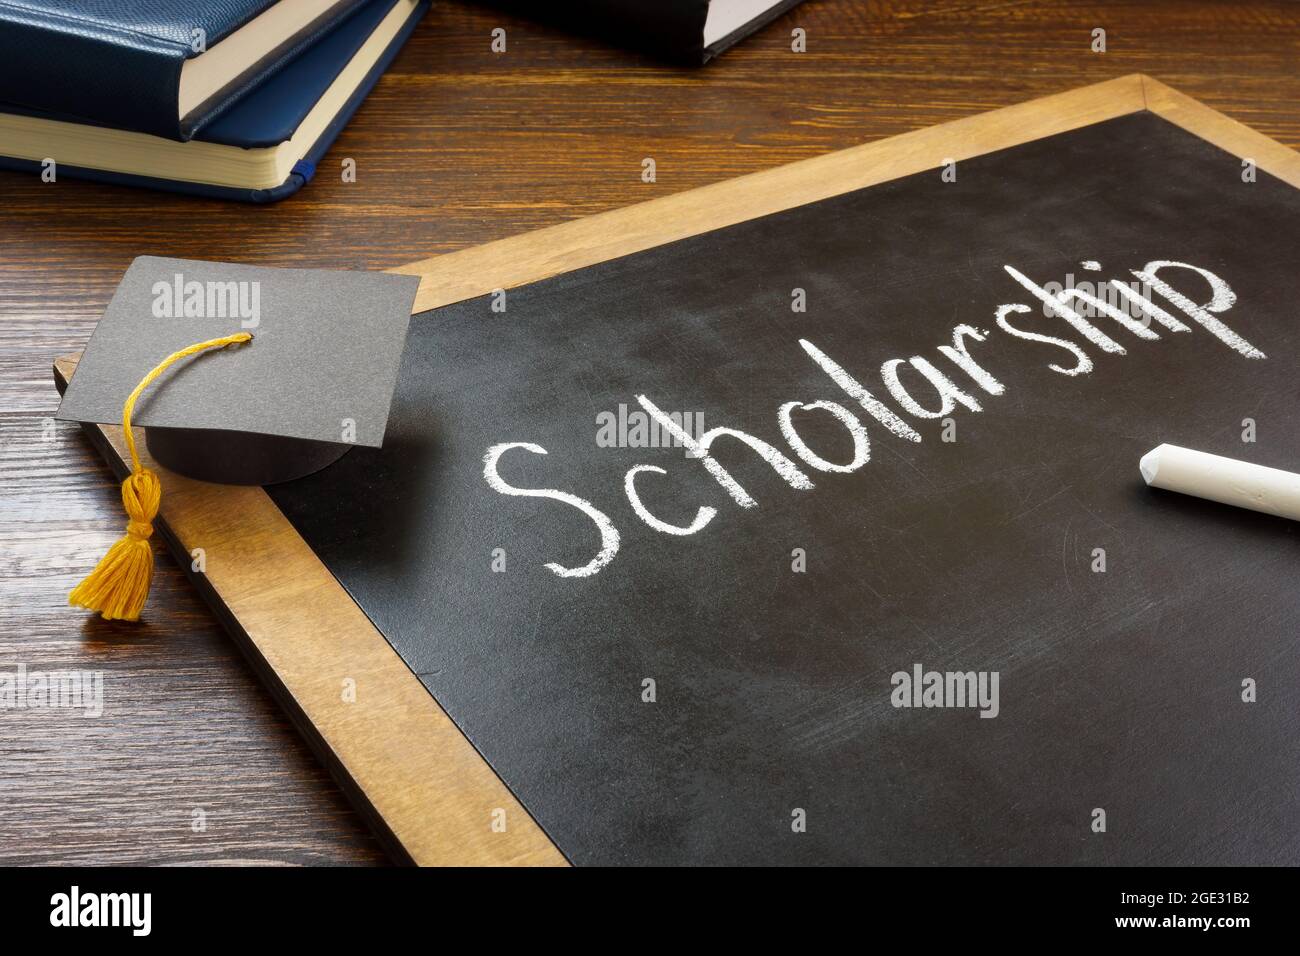 Scholarship written on the blackboard and graduation cap. Stock Photo